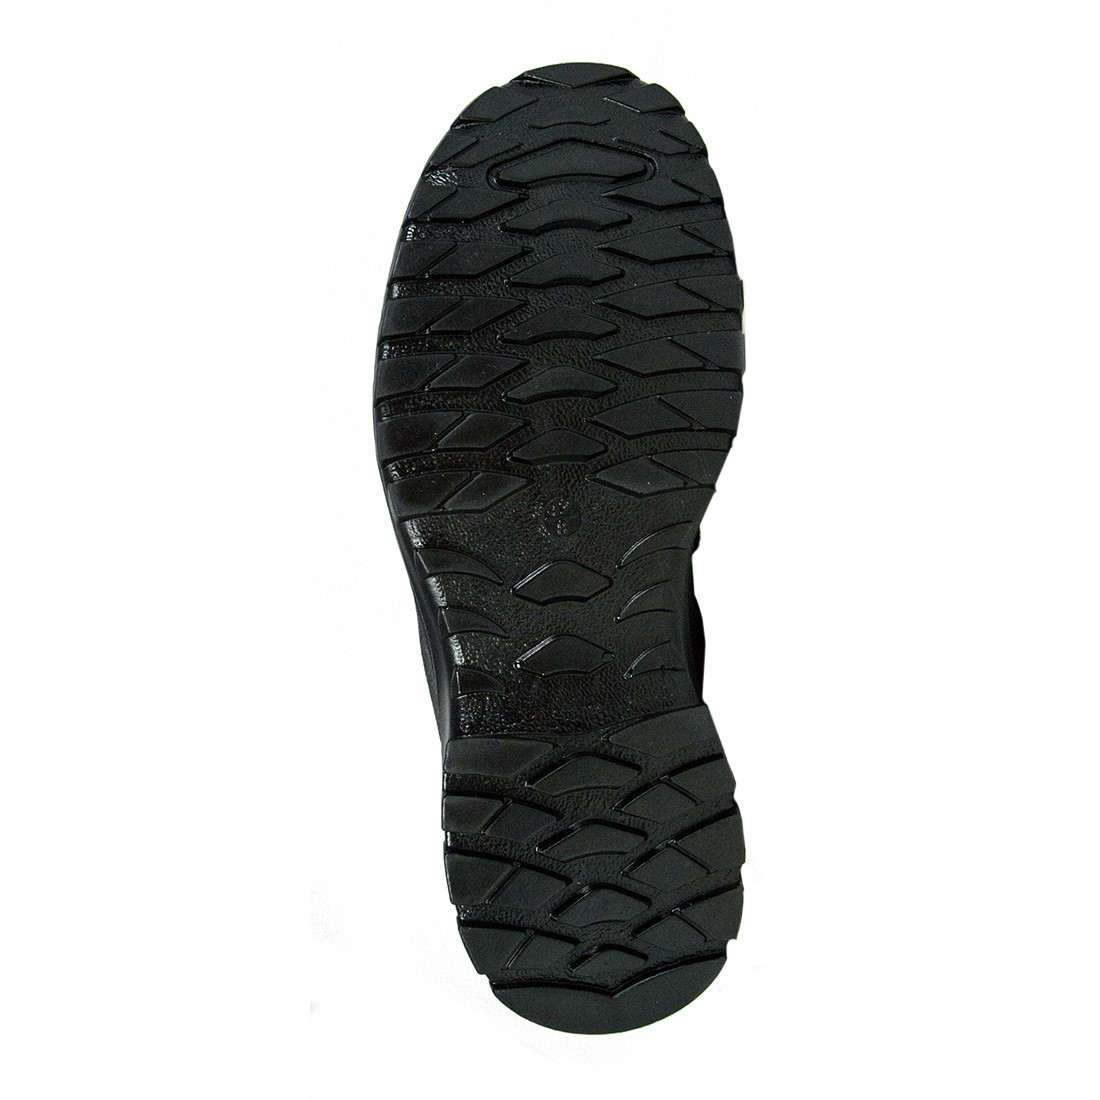 Pantofi Jagger S3 SRC - Incaltaminte de protectie | Bocanci, Pantofi, Sandale, Cizme